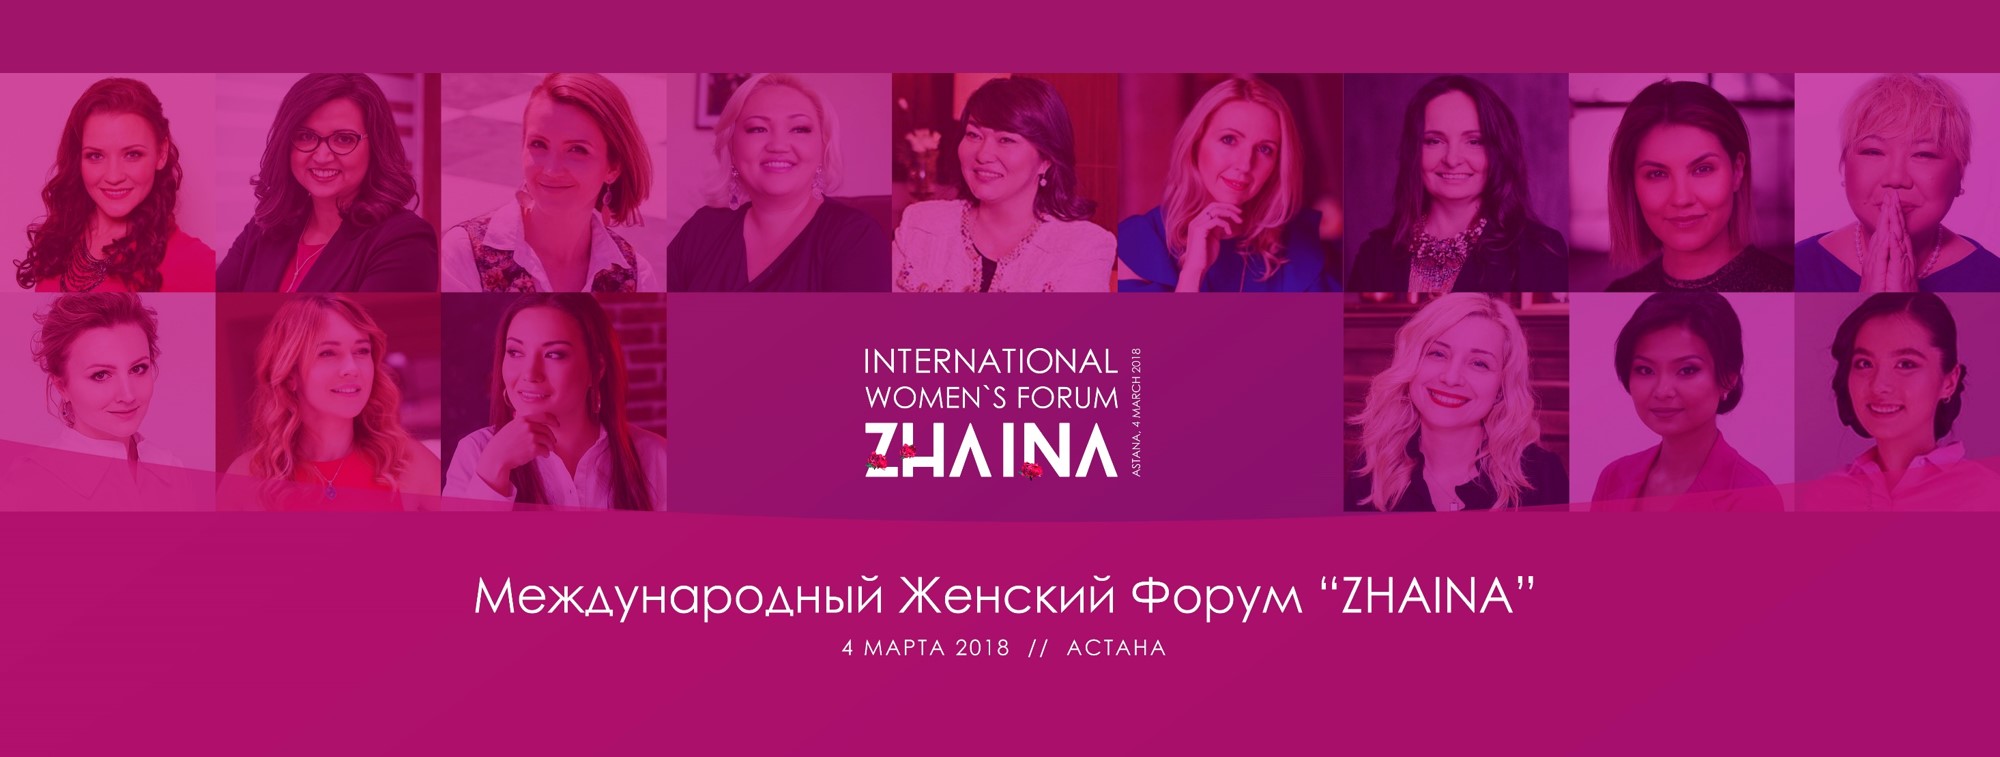 Международный женский бизнес-форум Zhaina пройдет в Казахстане 